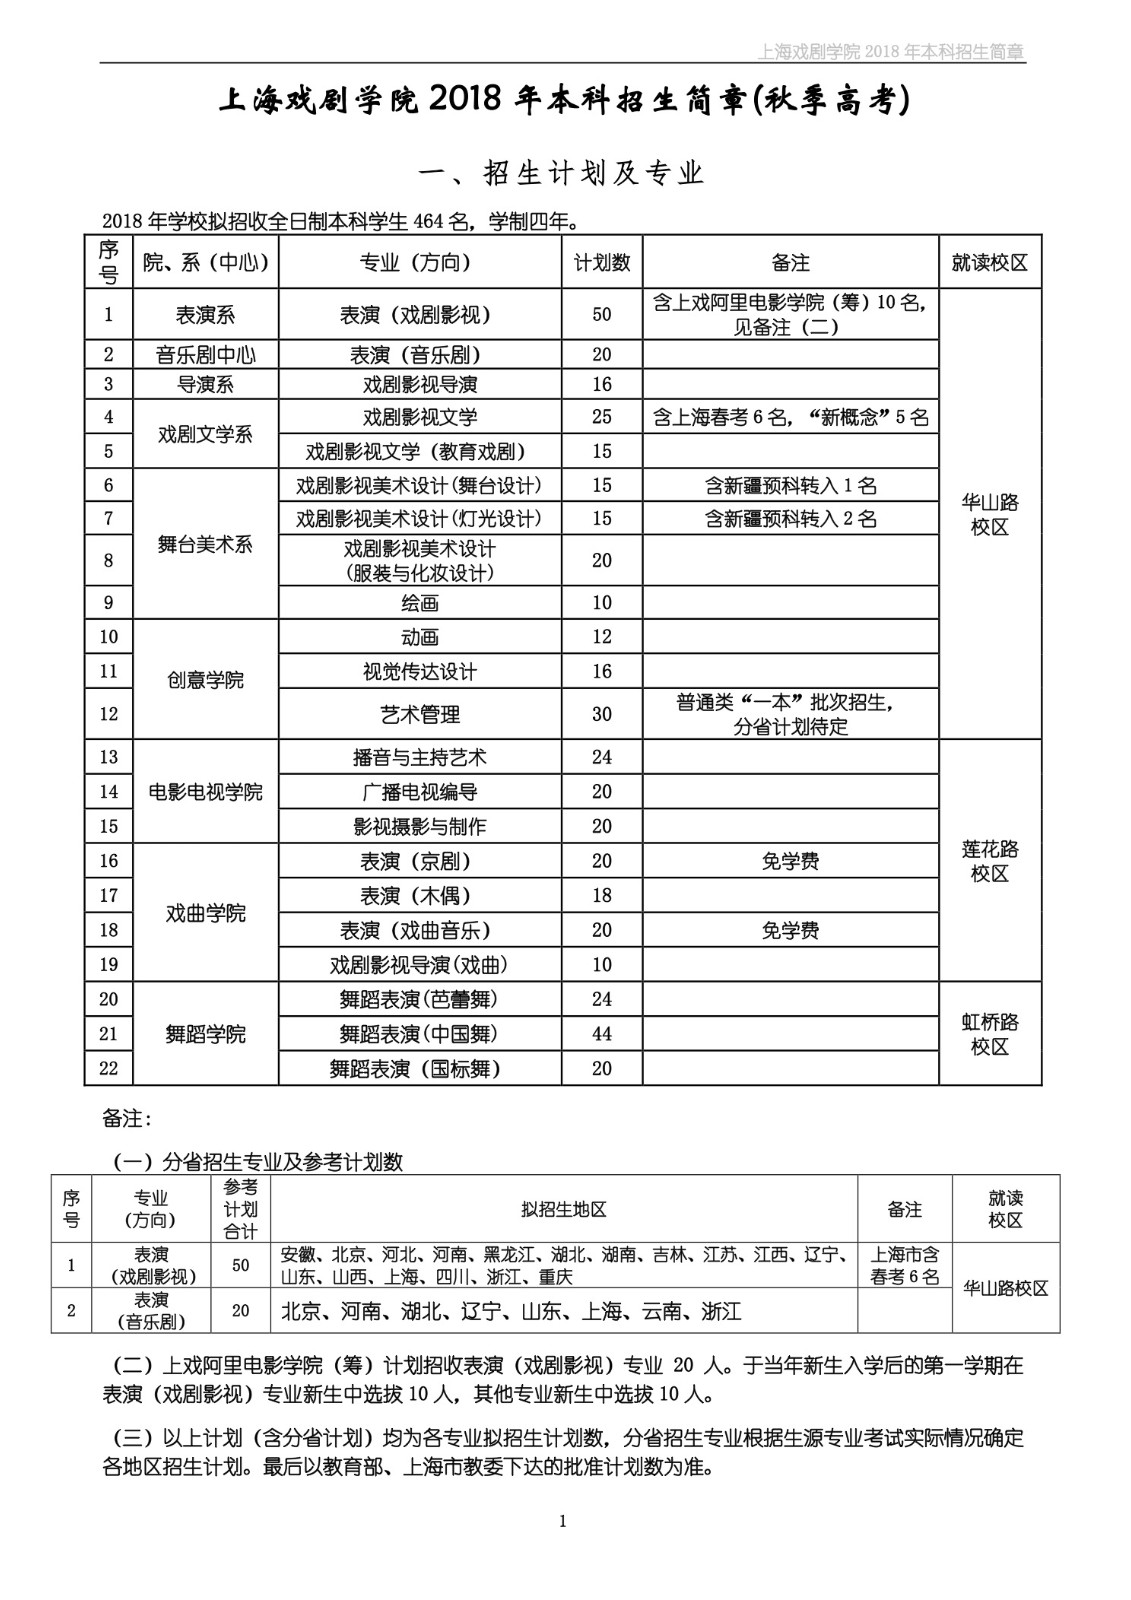 上海戏剧学院2018年本科招生简章-page1.jpeg